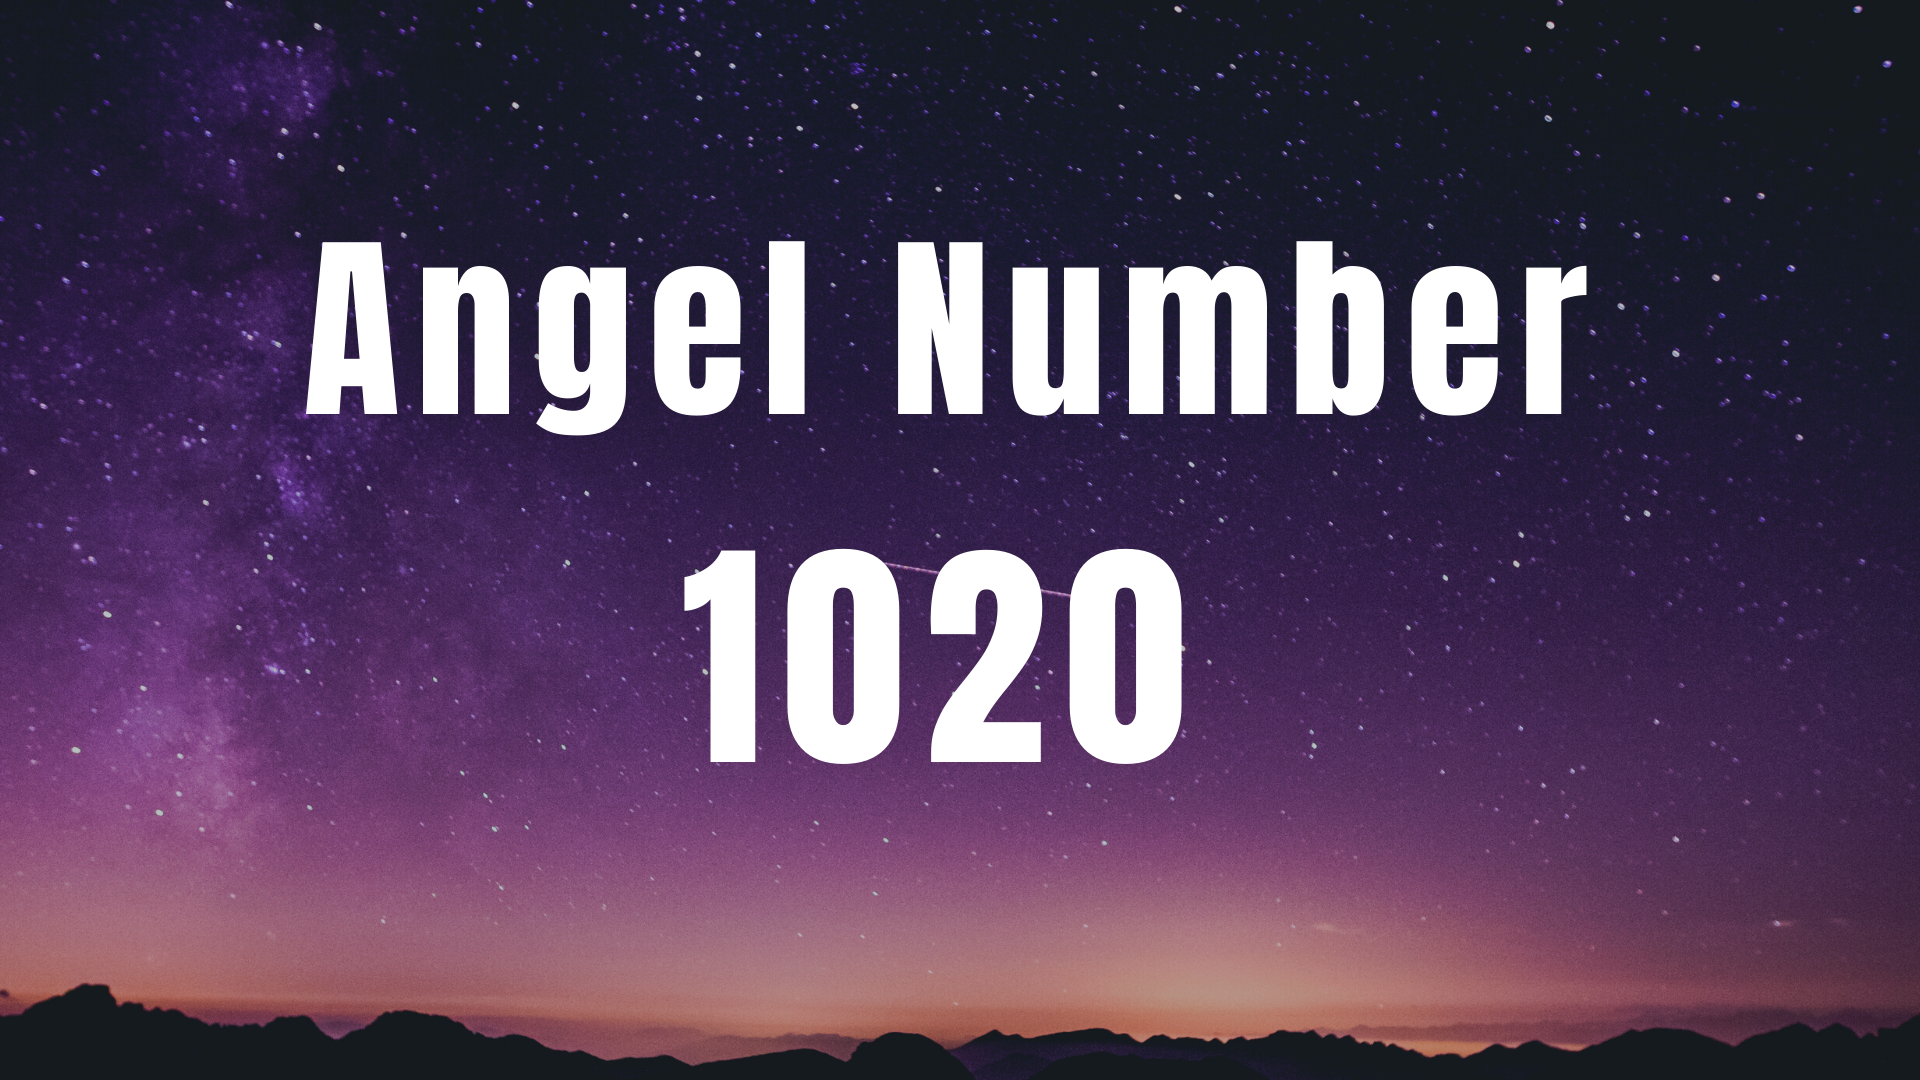 Angel Number 1020